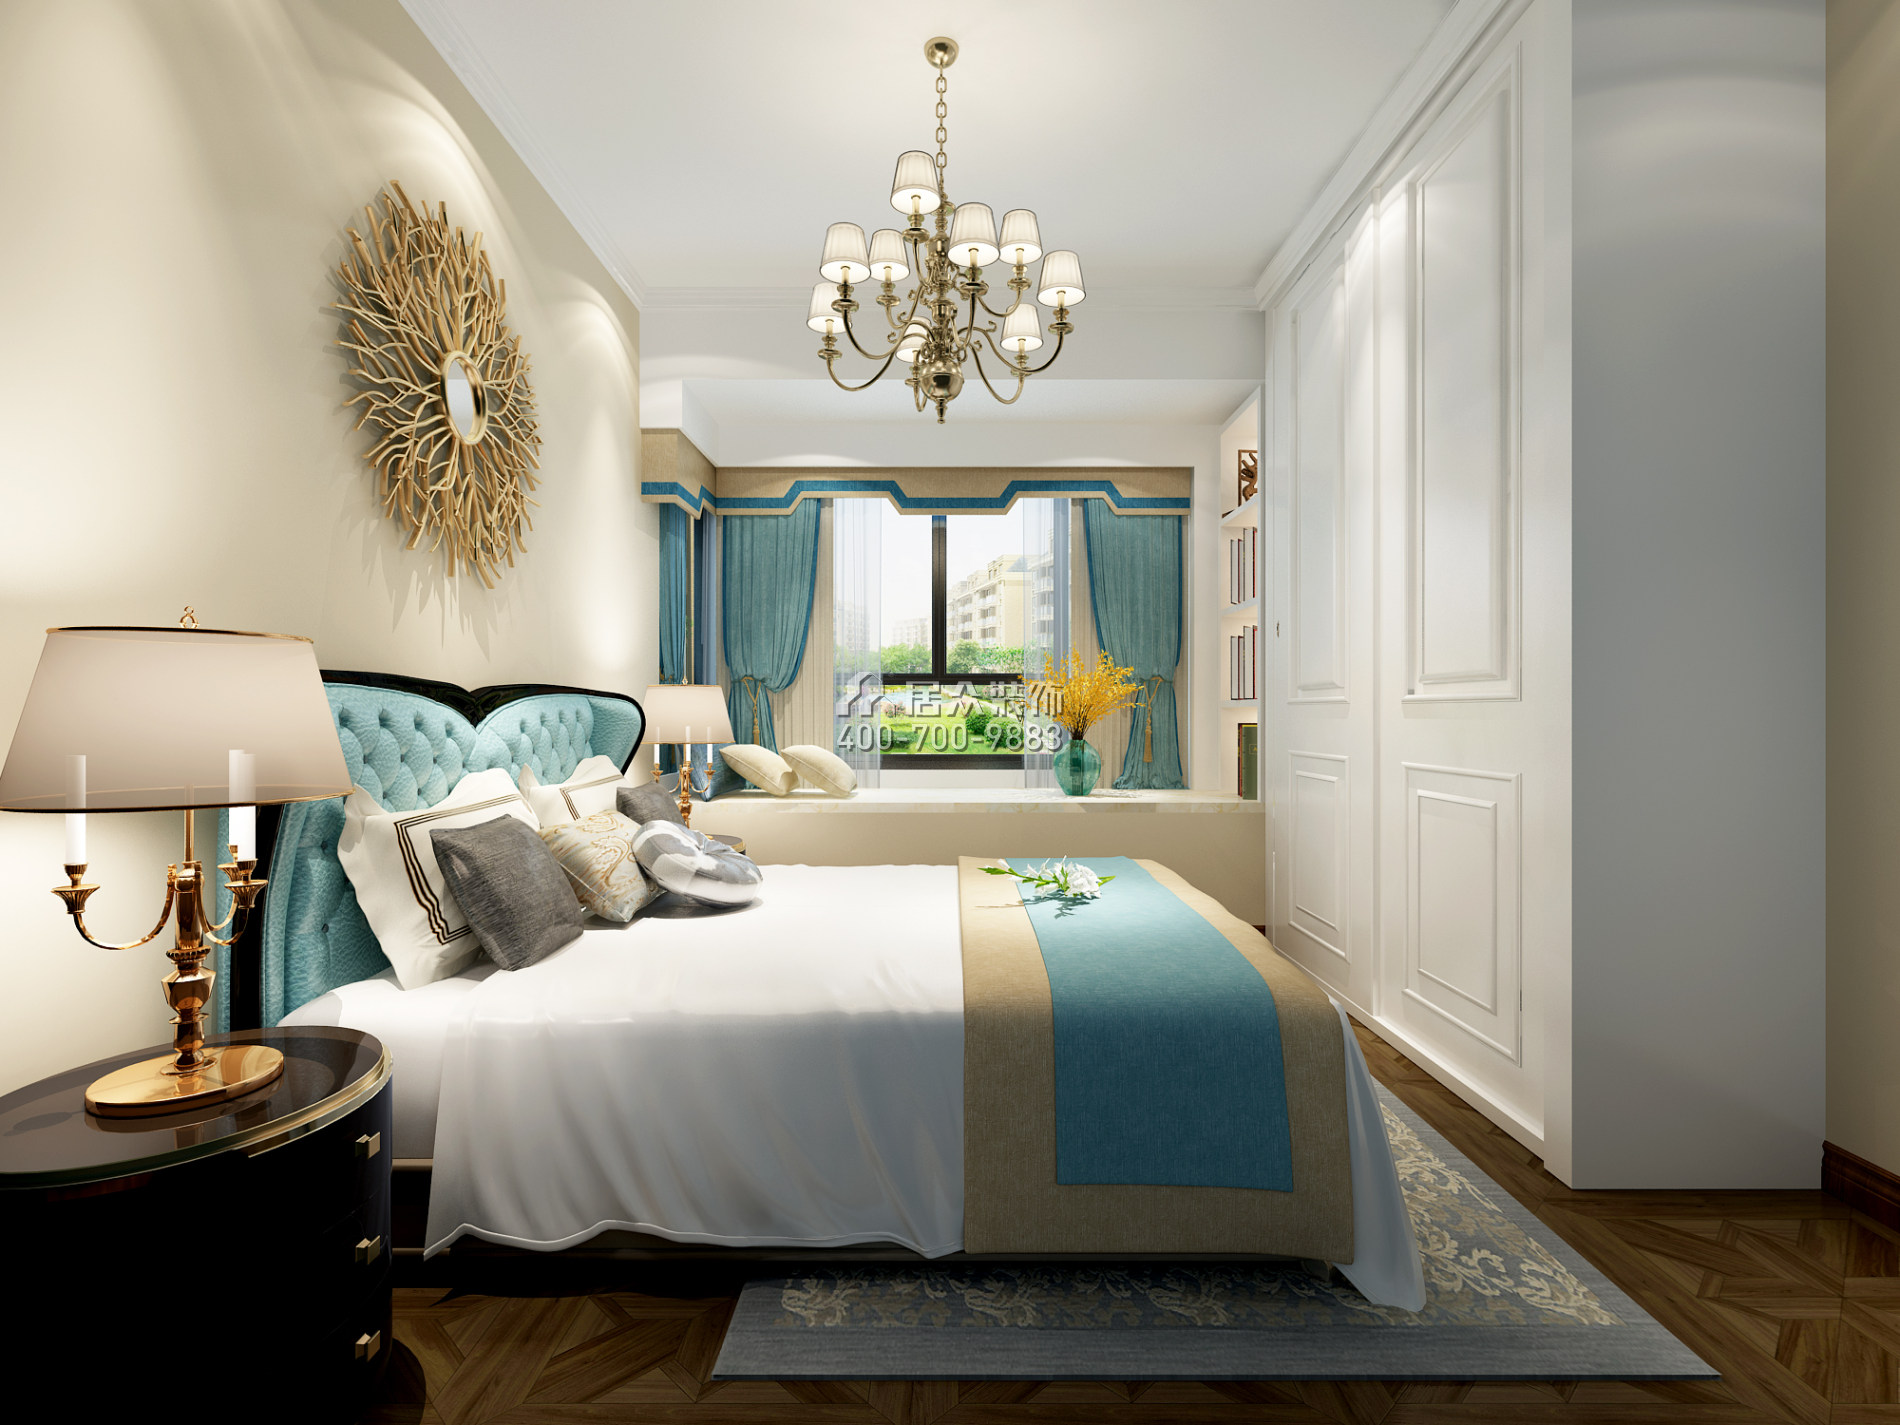 靖軒豪苑71平方米美式風格平層戶型臥室裝修效果圖